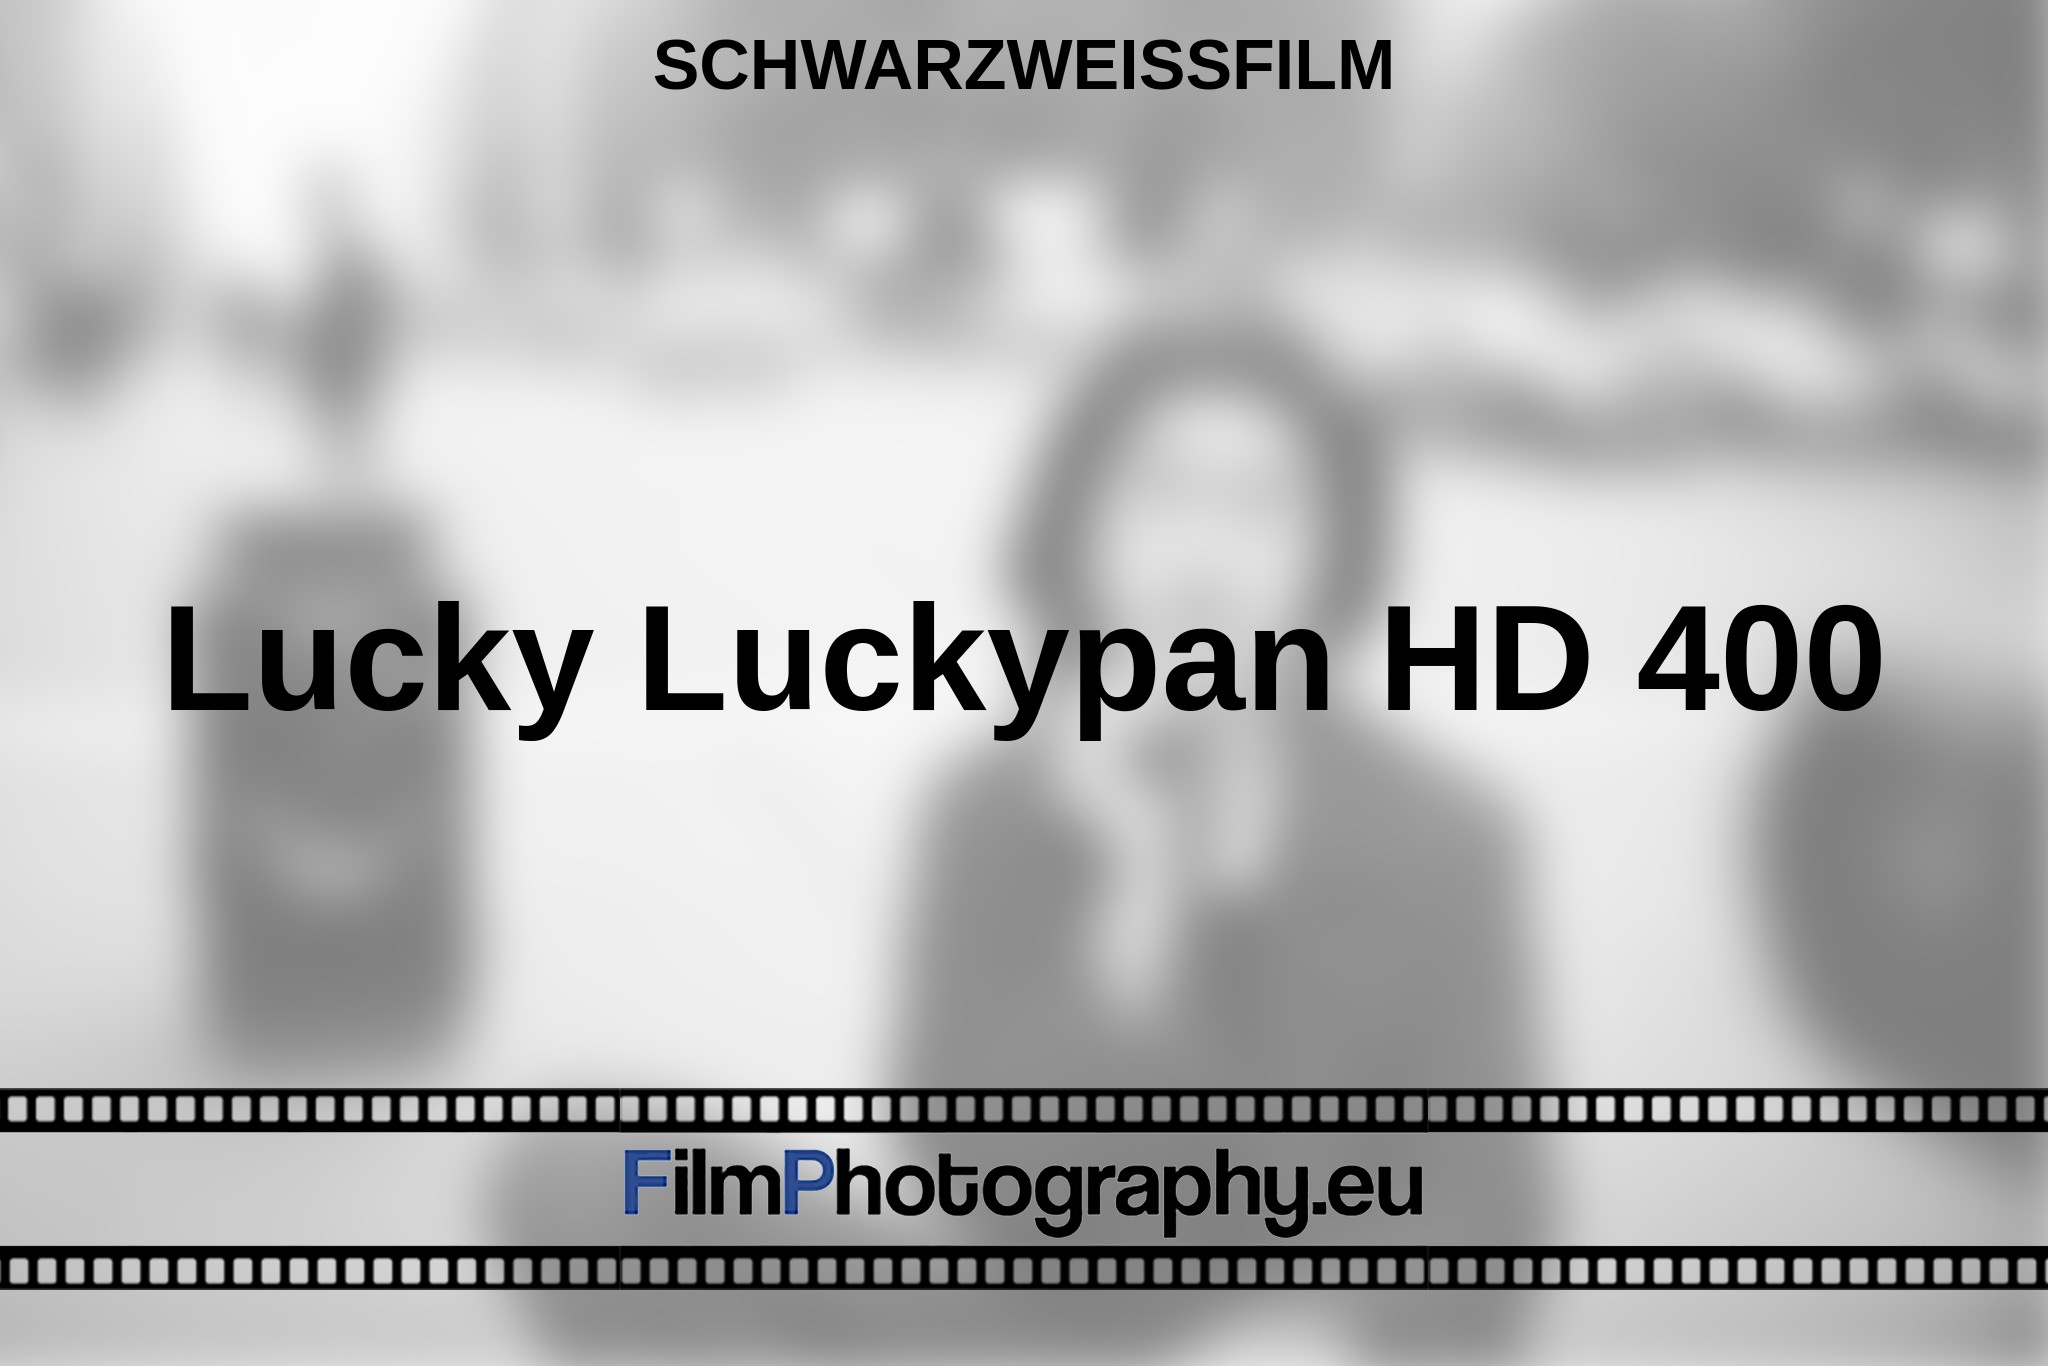 lucky-luckypan-hd-400-schwarzweißfilm-bnv.jpg